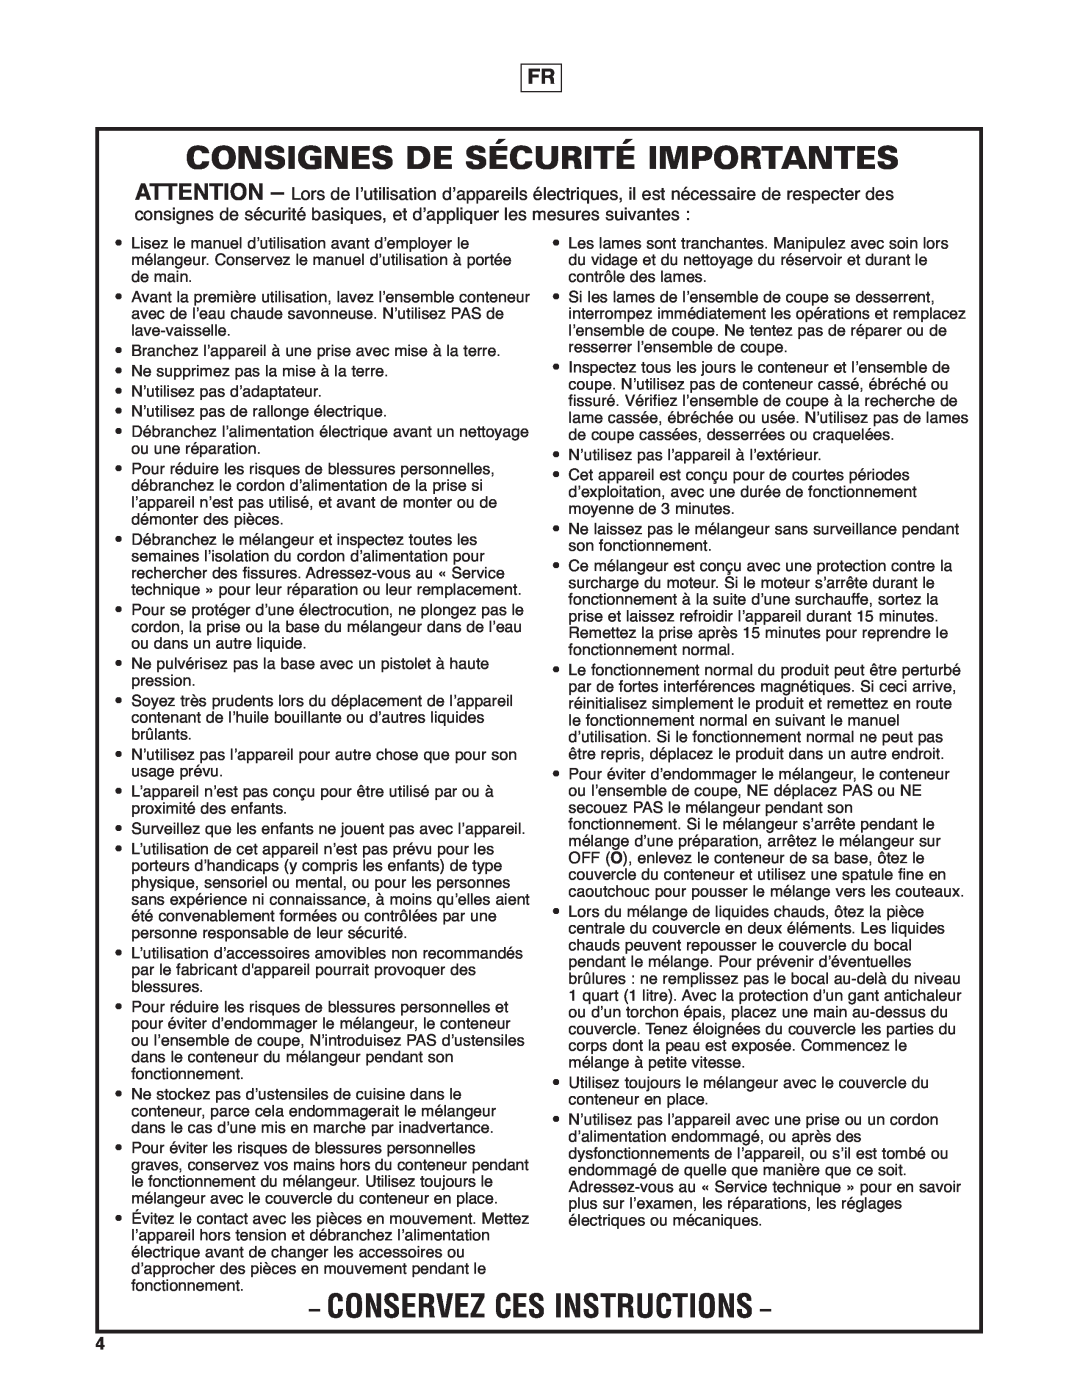 Hamilton Beach HBF400 operation manual Consignes De Sécurité Importantes, Conservez Ces Instructions 